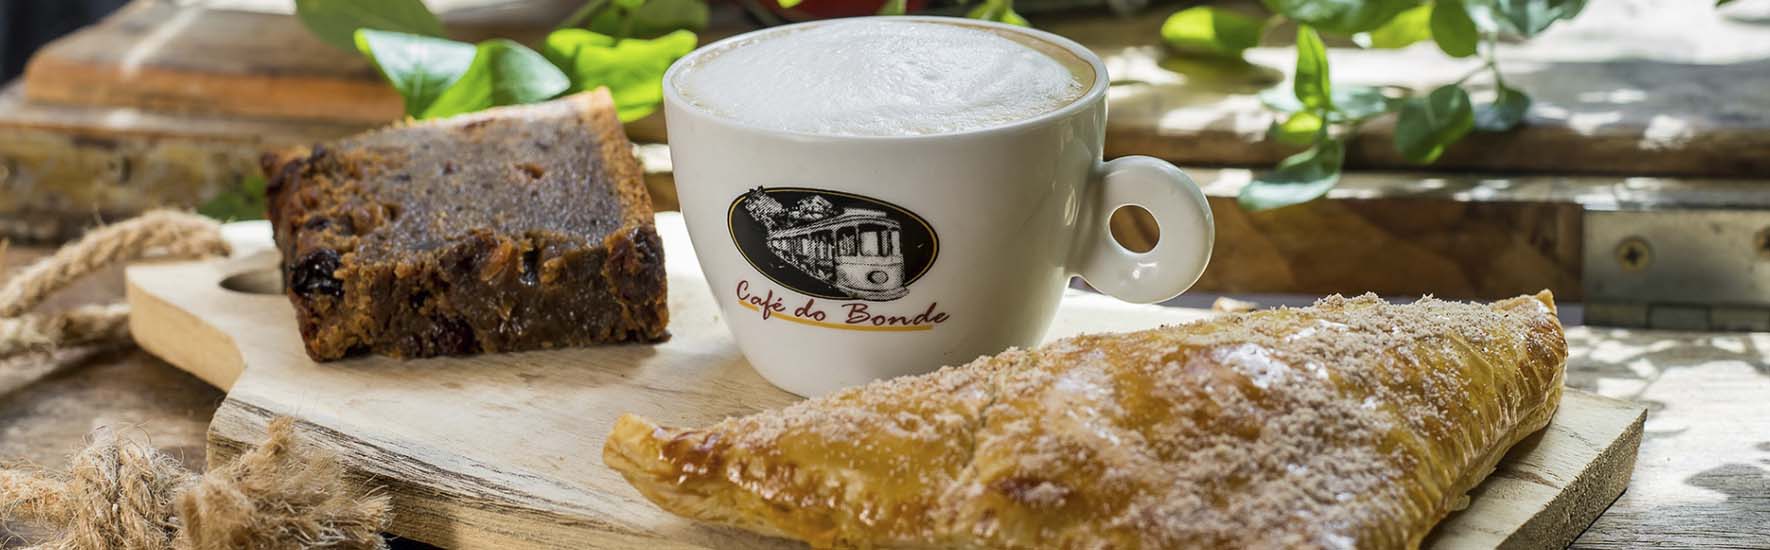 Terceira edição do “Eu amo café” chega em 21 cafeterias pernambucanas